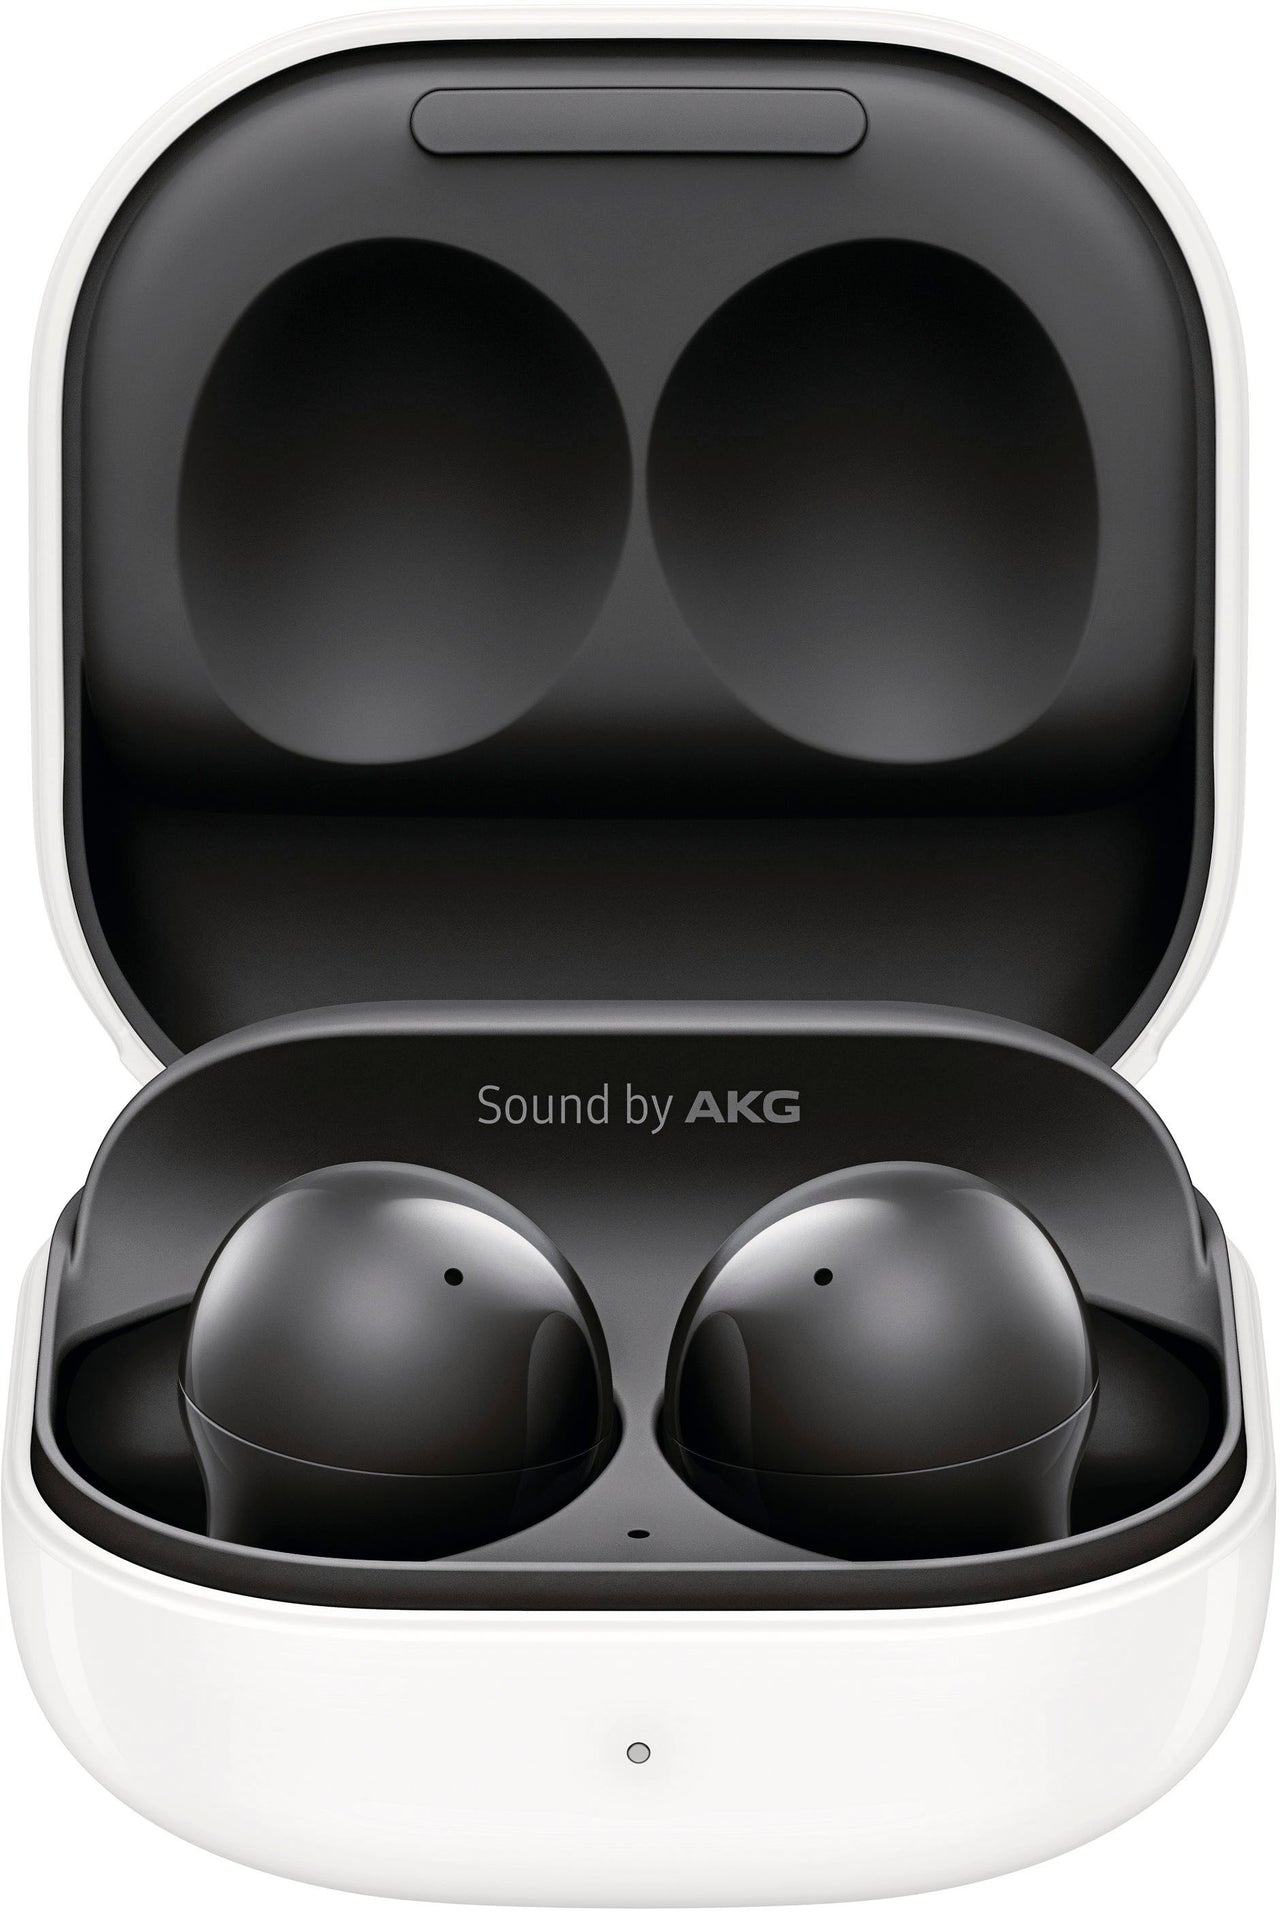 Samsung - Geek Squad Certified Refurbished Galaxy Buds2 True Wireless Earbud Headphones - Phantom Black